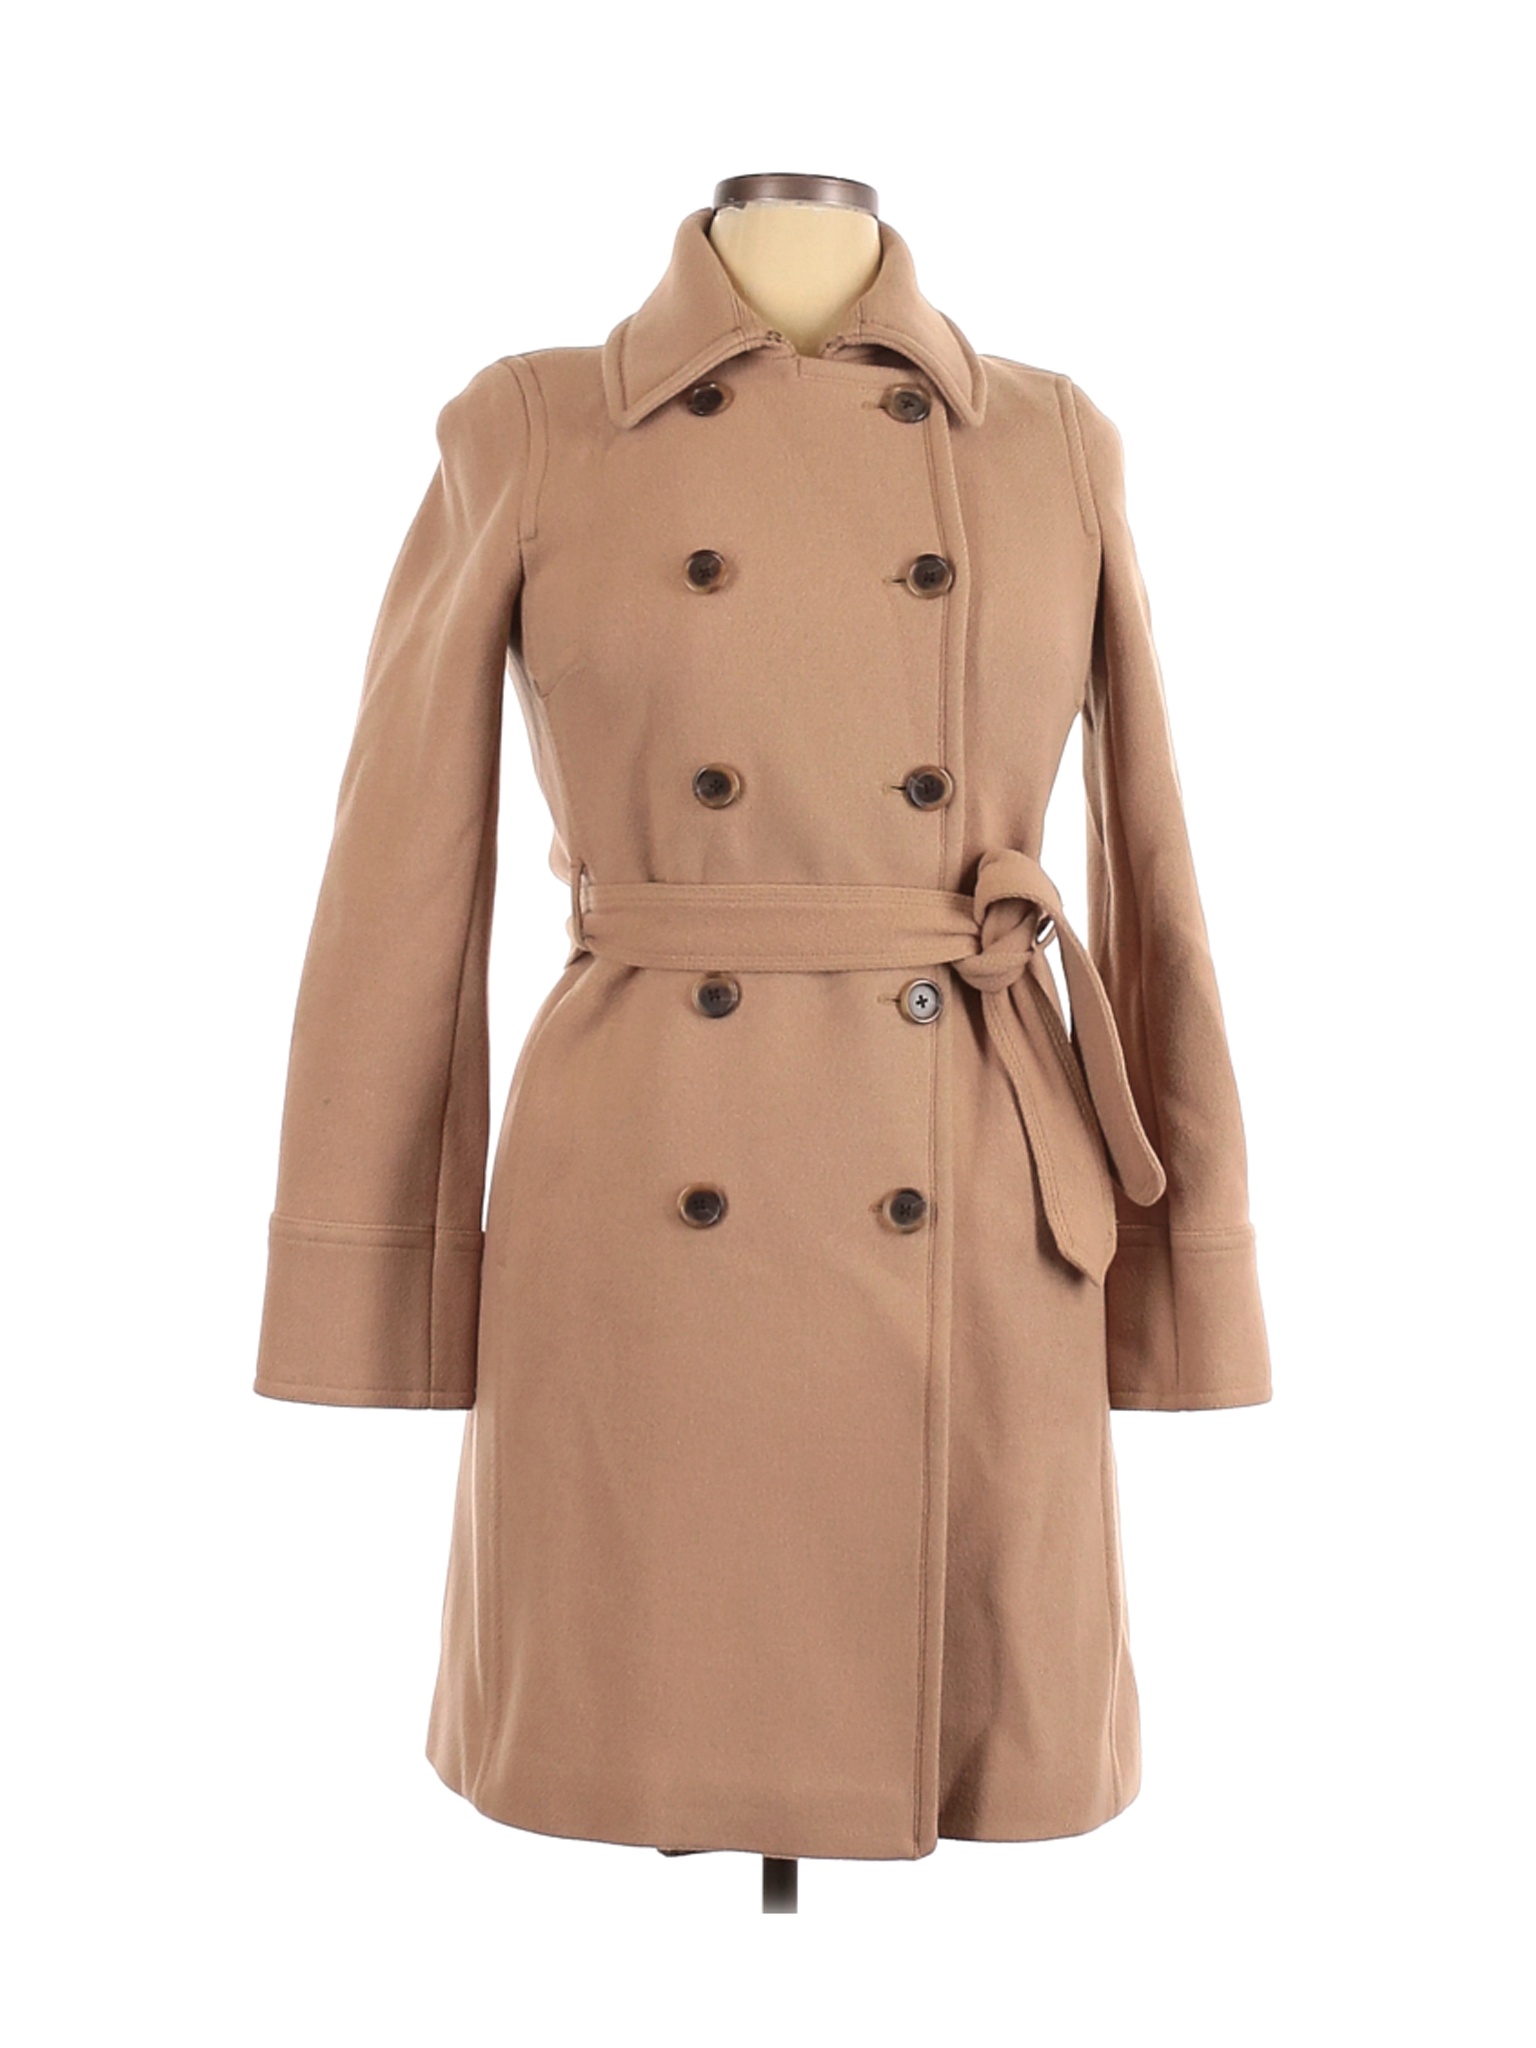 J.Crew Women Brown Wool Coat 12 | eBay